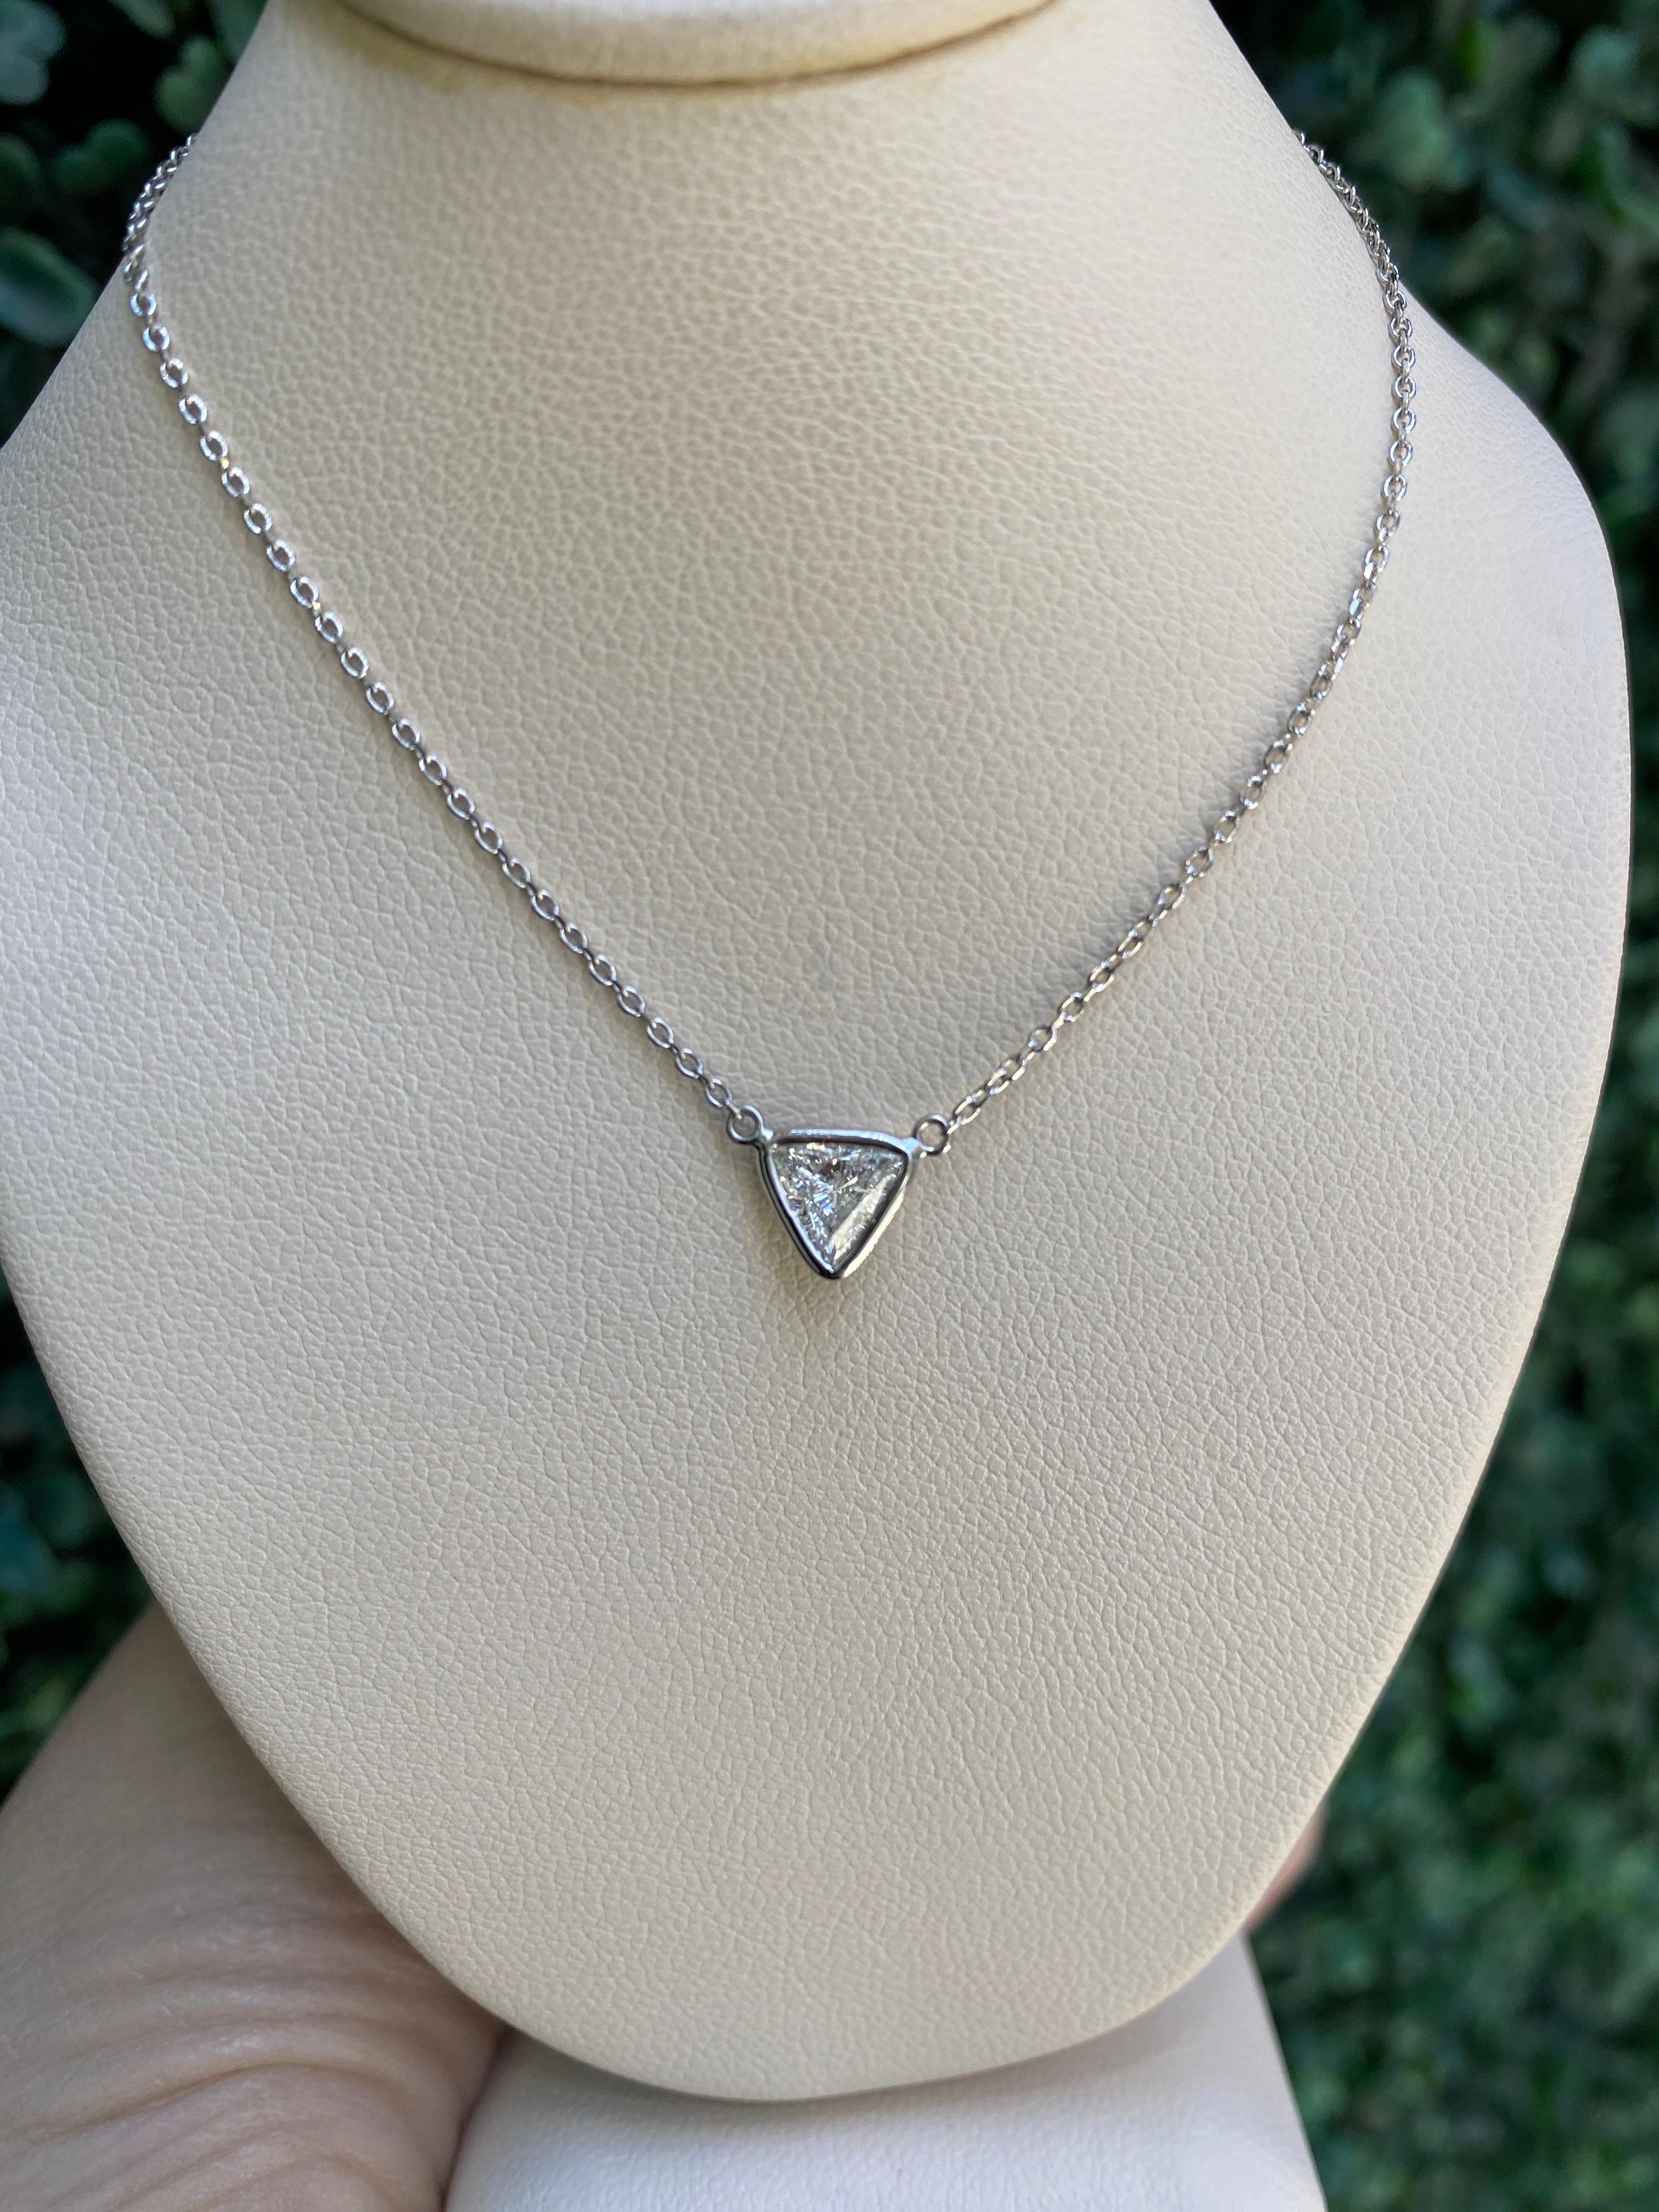 0.46 Carat Natural Trillion Cut Diamond Pendant Necklace, 14k White Gold For Sale 13